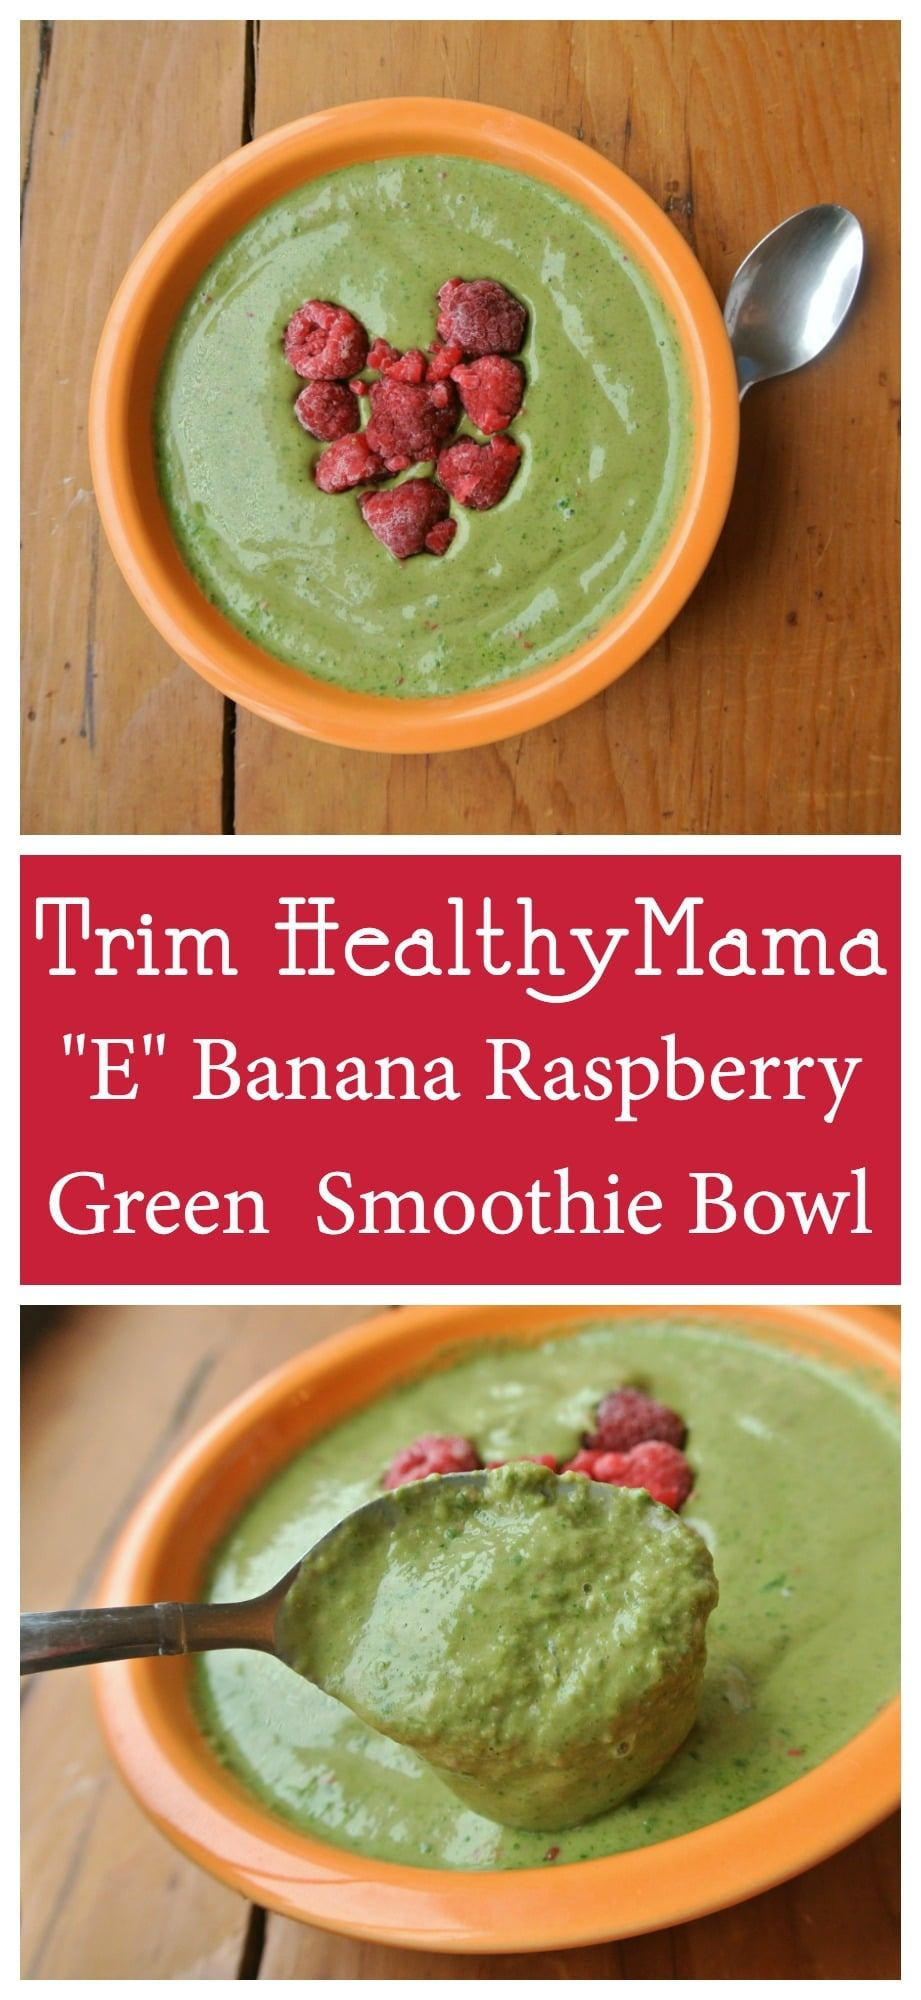 Trim Healthy Mama Smoothie Recipes
 Trim Healthy Mama Green Smoothie Bowl E